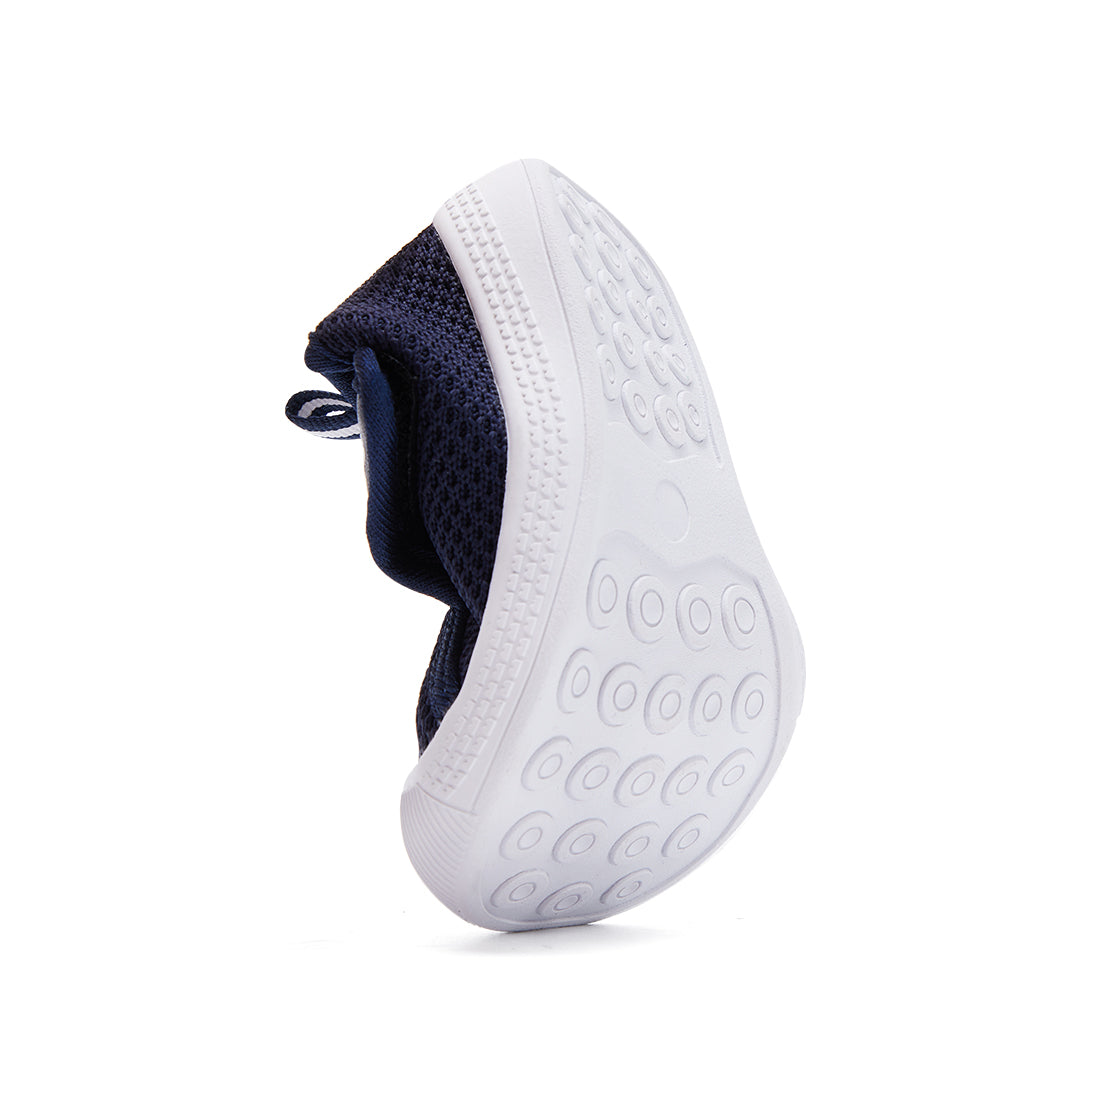 Velcro full upper breathable lightweight non-slip Sneakers | BMCiTYBM